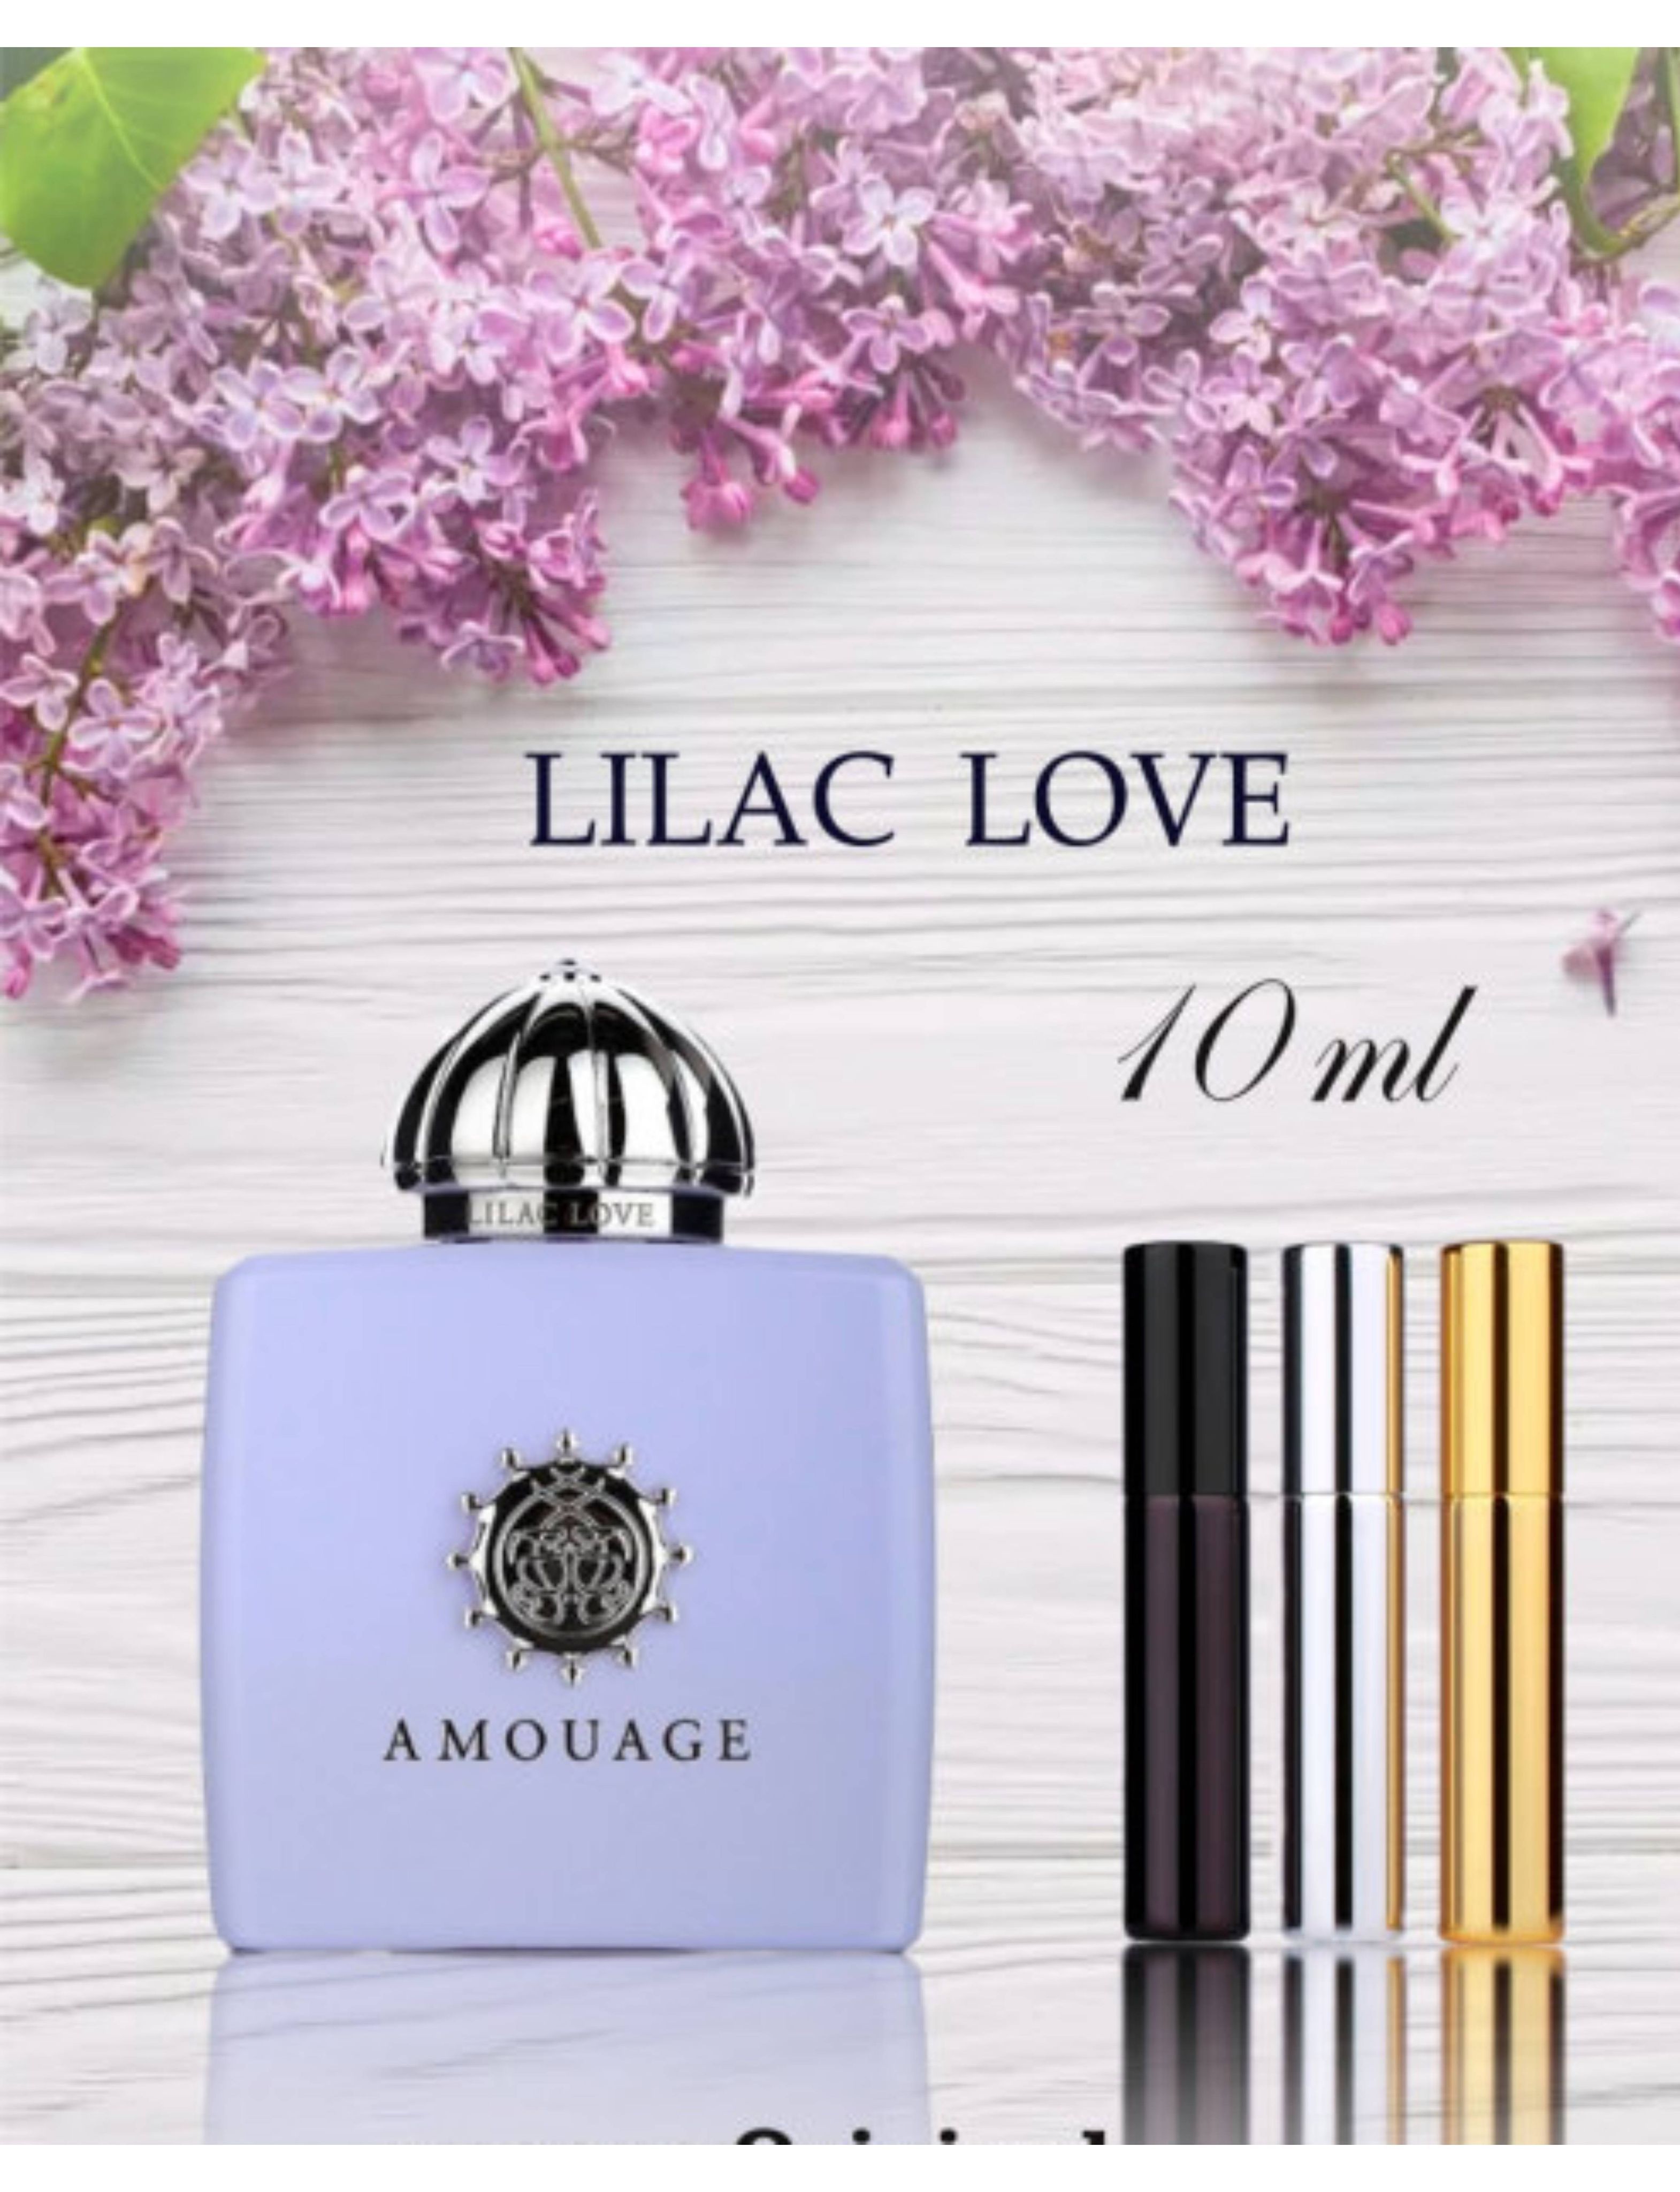 Le Parfume туалетная вода Lilac Love Amouage, 10 мл Туалетная вода